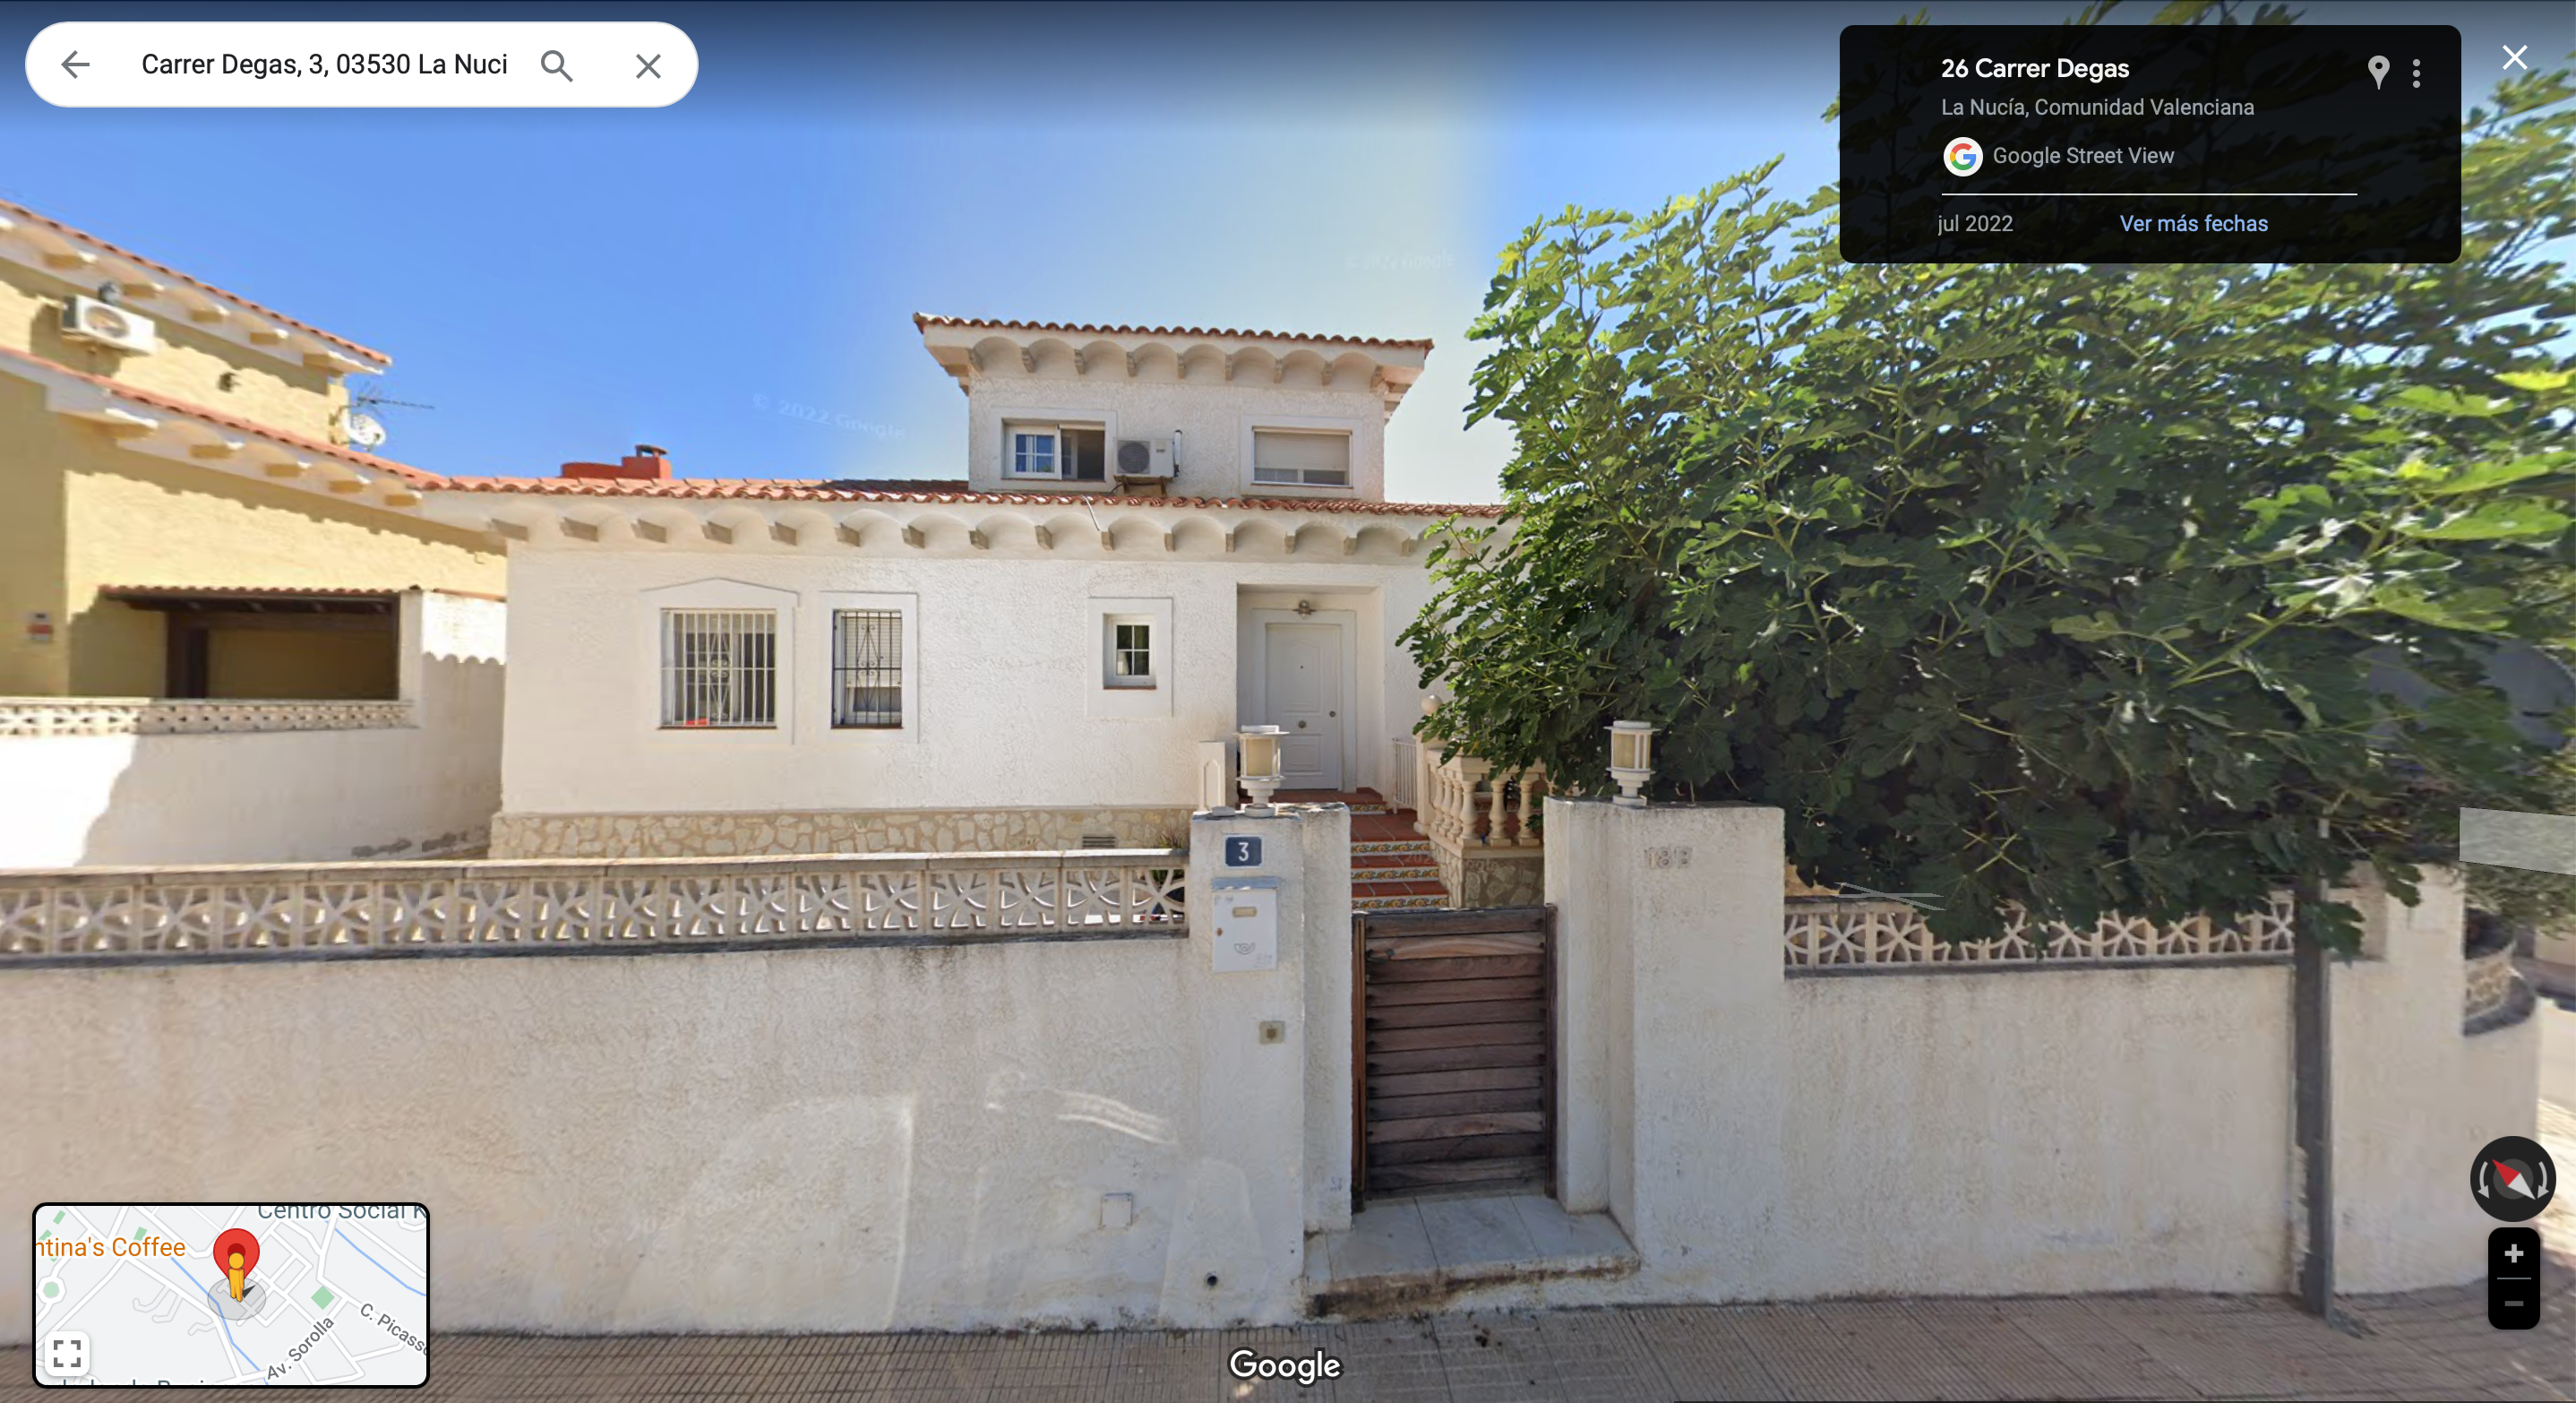 OPORTUNIDAD: Chalet Independiente ee 206m2 y 4 habitaciones en La Nucia (Vivienda actualmente ALQUILADA) Venta La Nucia